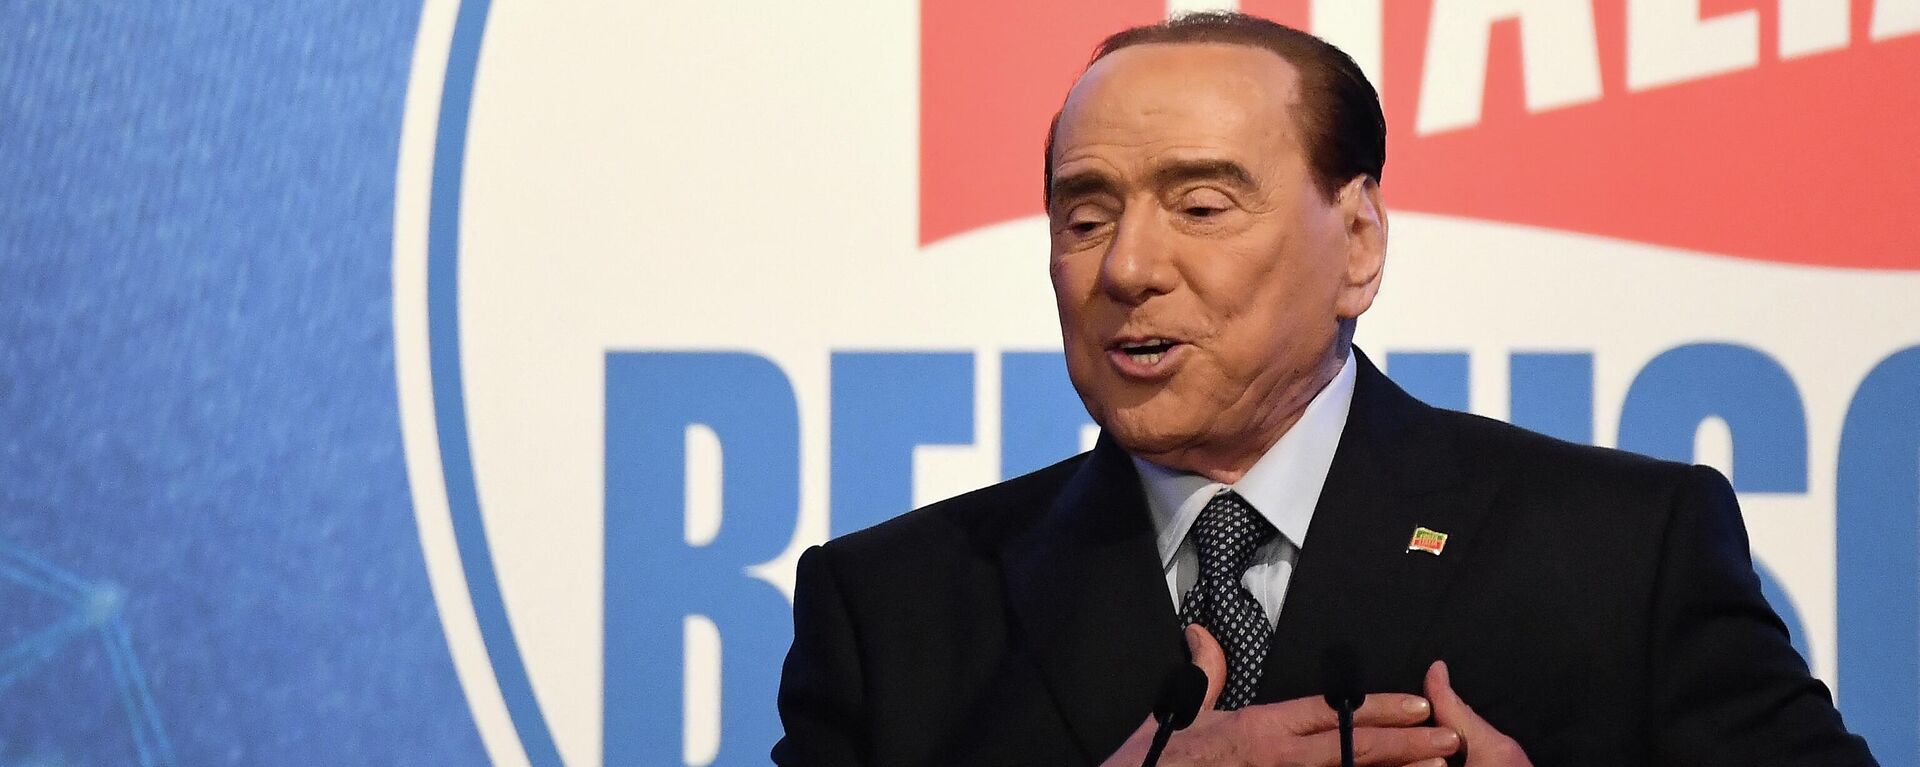 Silvio Berlusconi, ex-primeiro-ministro italiano (1994-1995, 2001-2006 e 2008-2011), fala durante comício do partido Forza Italia em 9 de março de 2022 - Sputnik Brasil, 1920, 04.06.2022